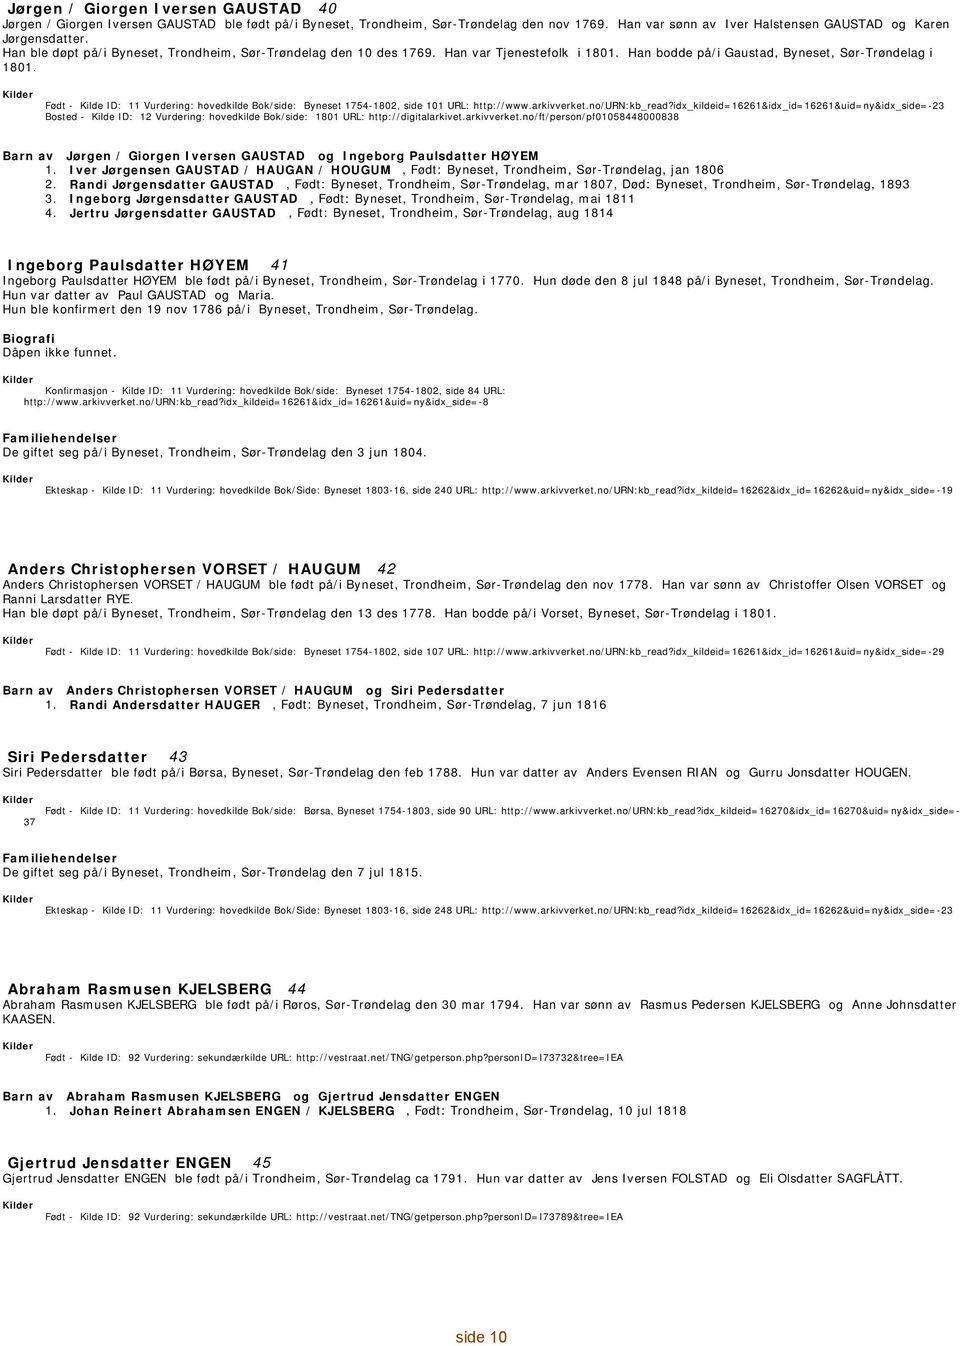 - 11 Vurdering: hovedkilde Bok/side: Byneset 1754-1802, side 101 URL: http://www.arkivverket.no/urn:kb_read?